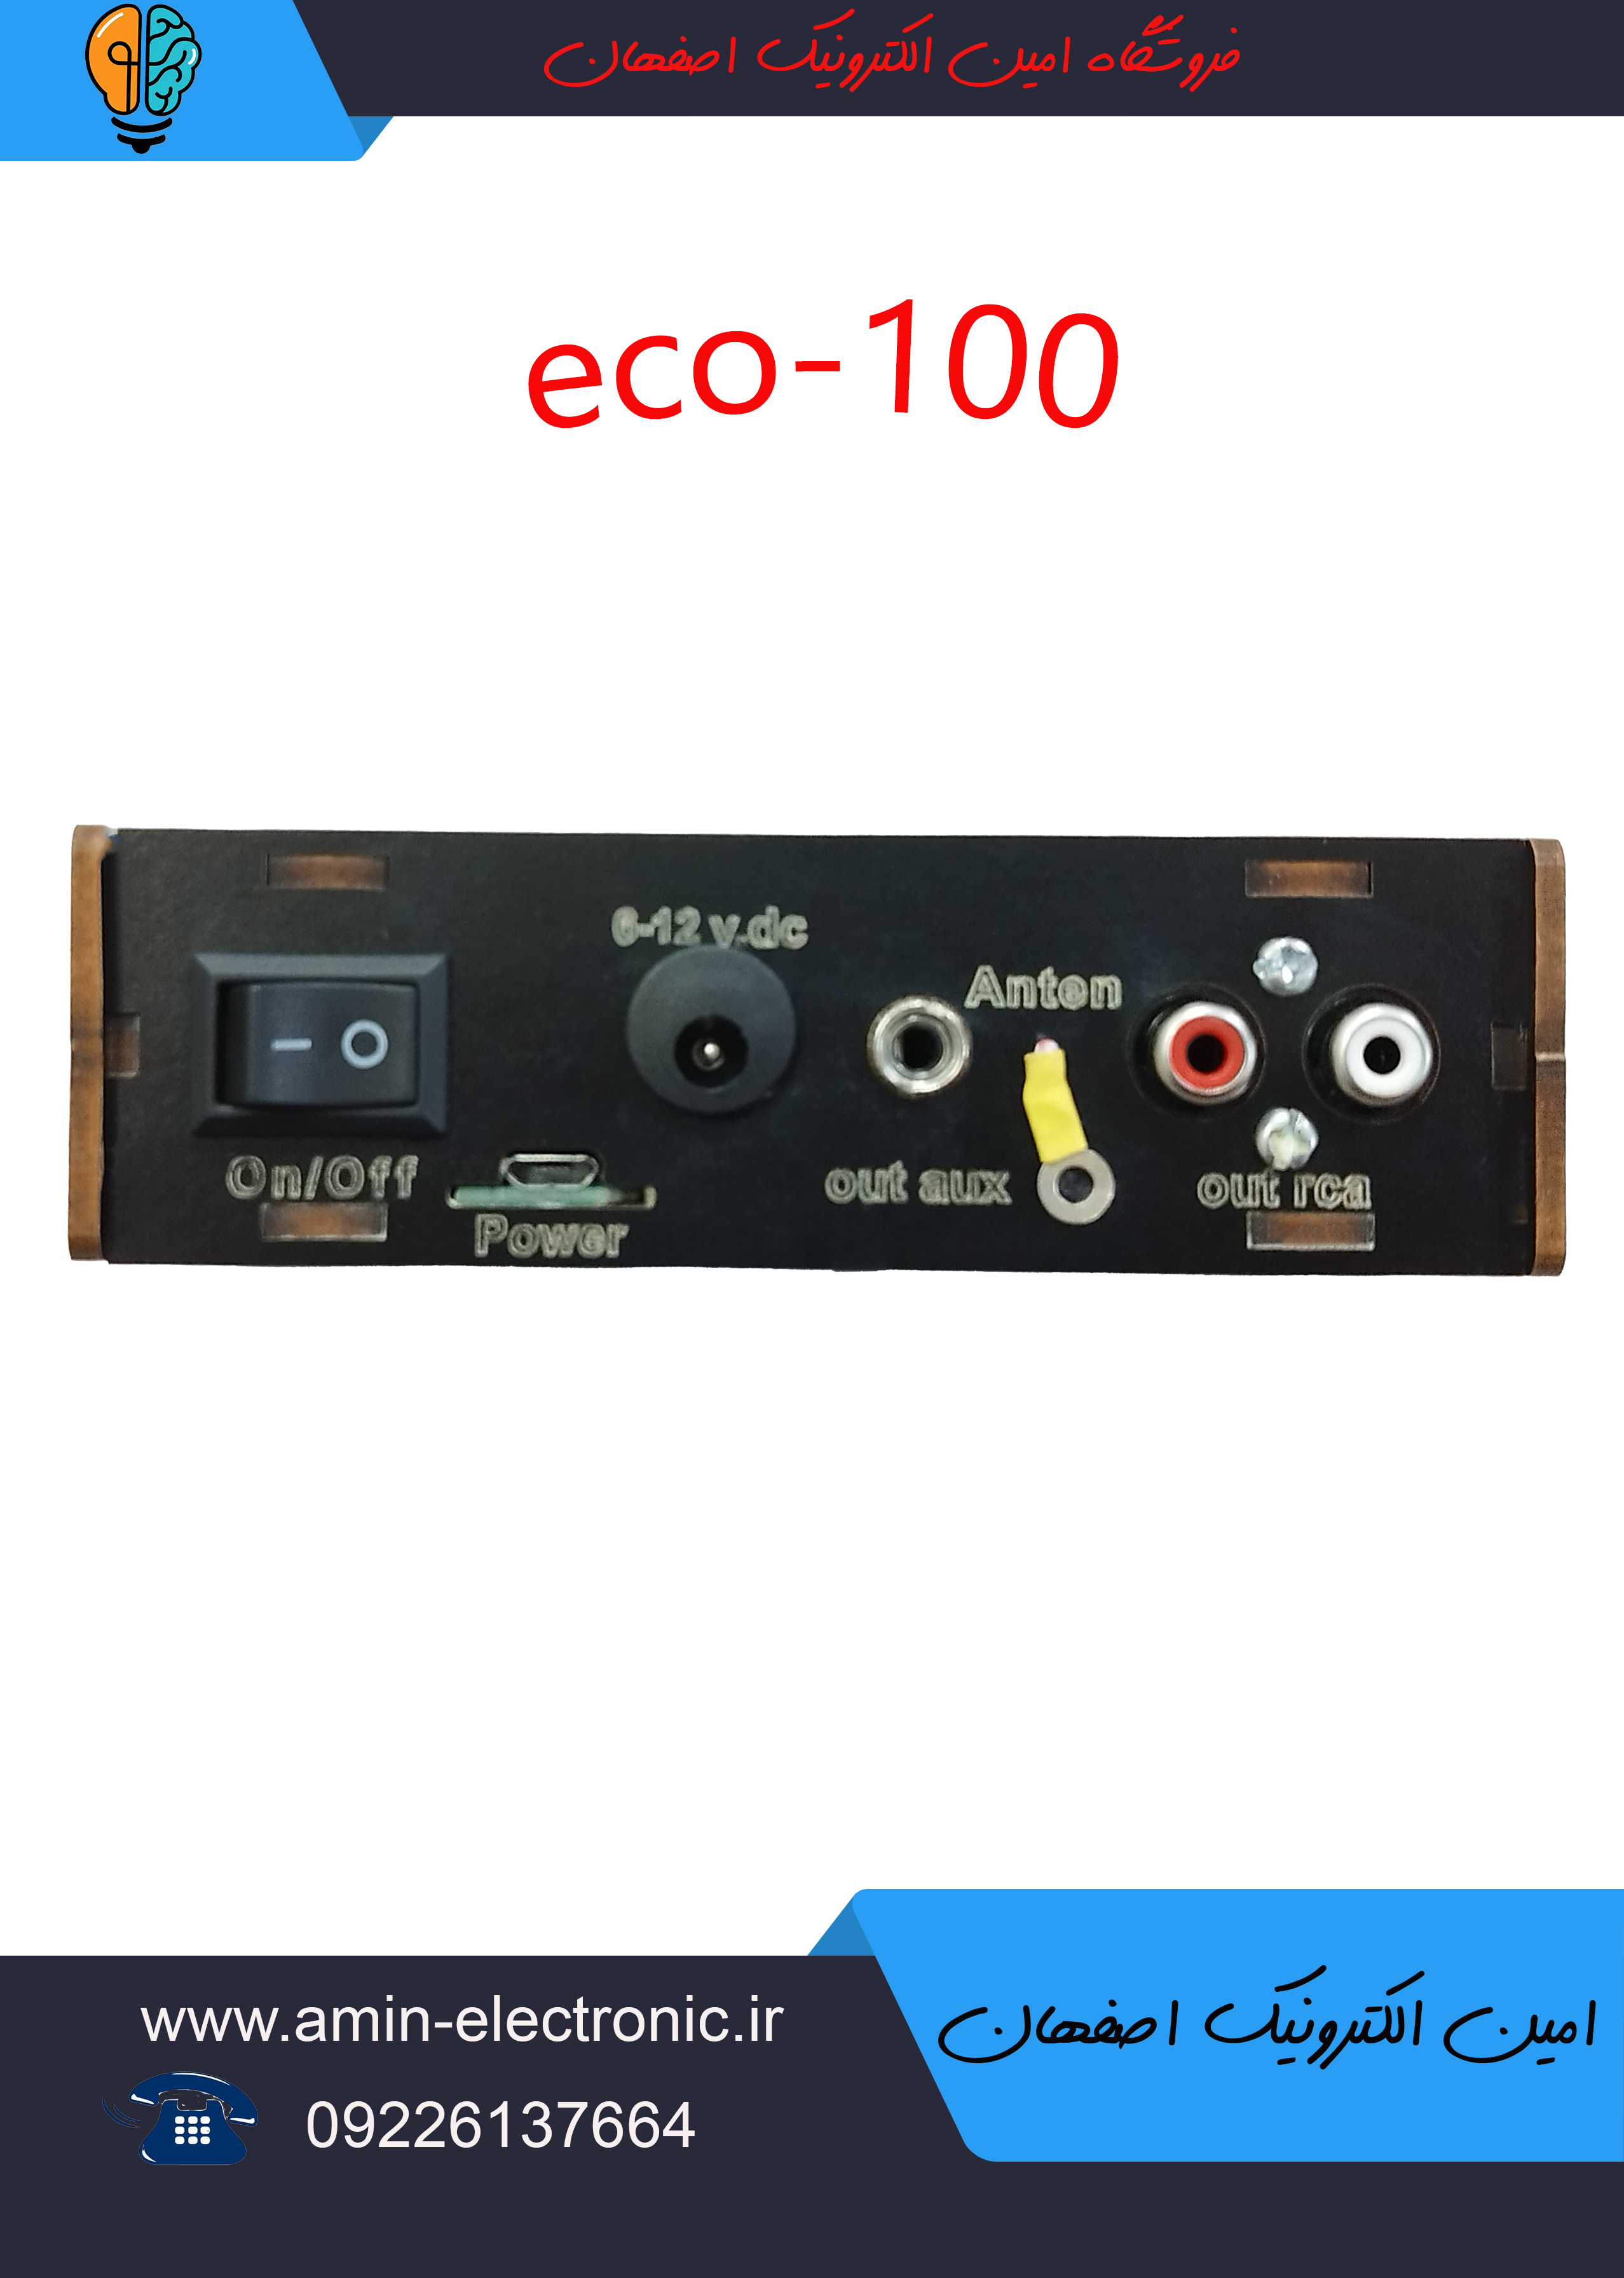 دستگاه مبدل فلش خور و بلوتوثی ضبط های قدیمی مدل eco_100 همراه با آداپتور و کابل سفید و قرمز